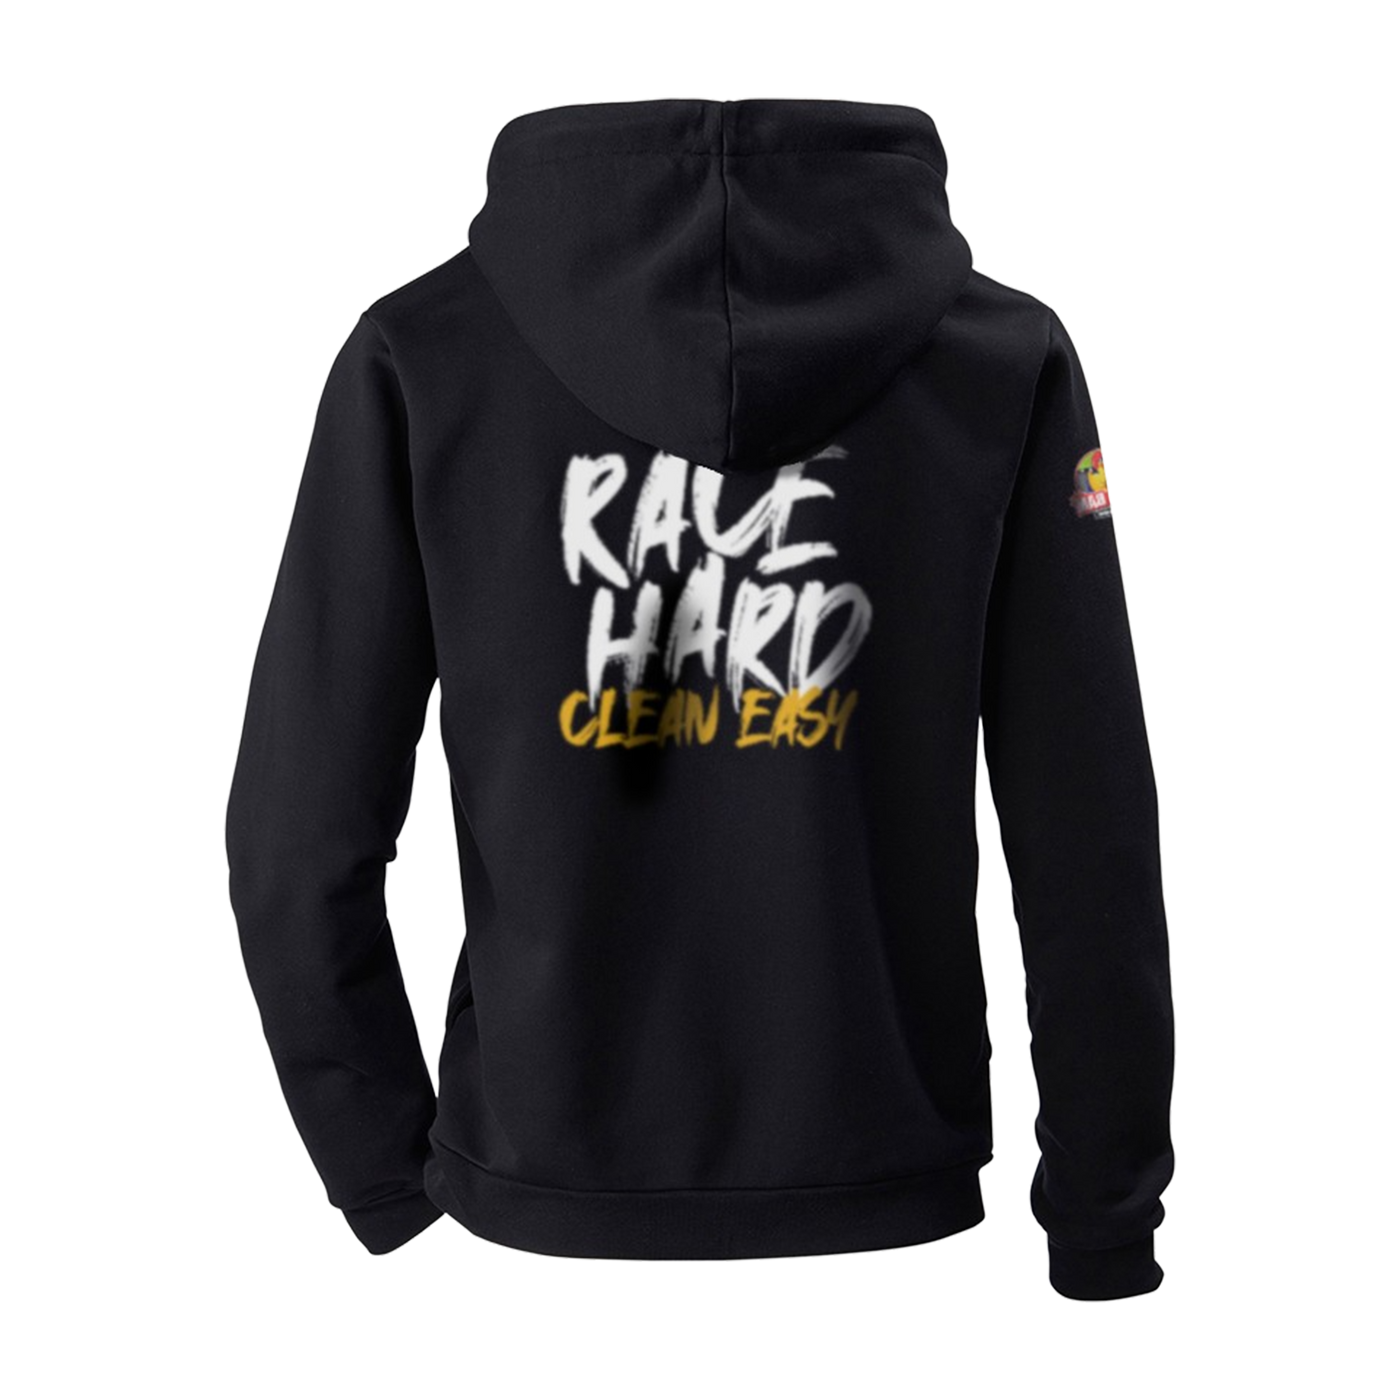 "Race Hard Clean Easy" hoodie black unisex